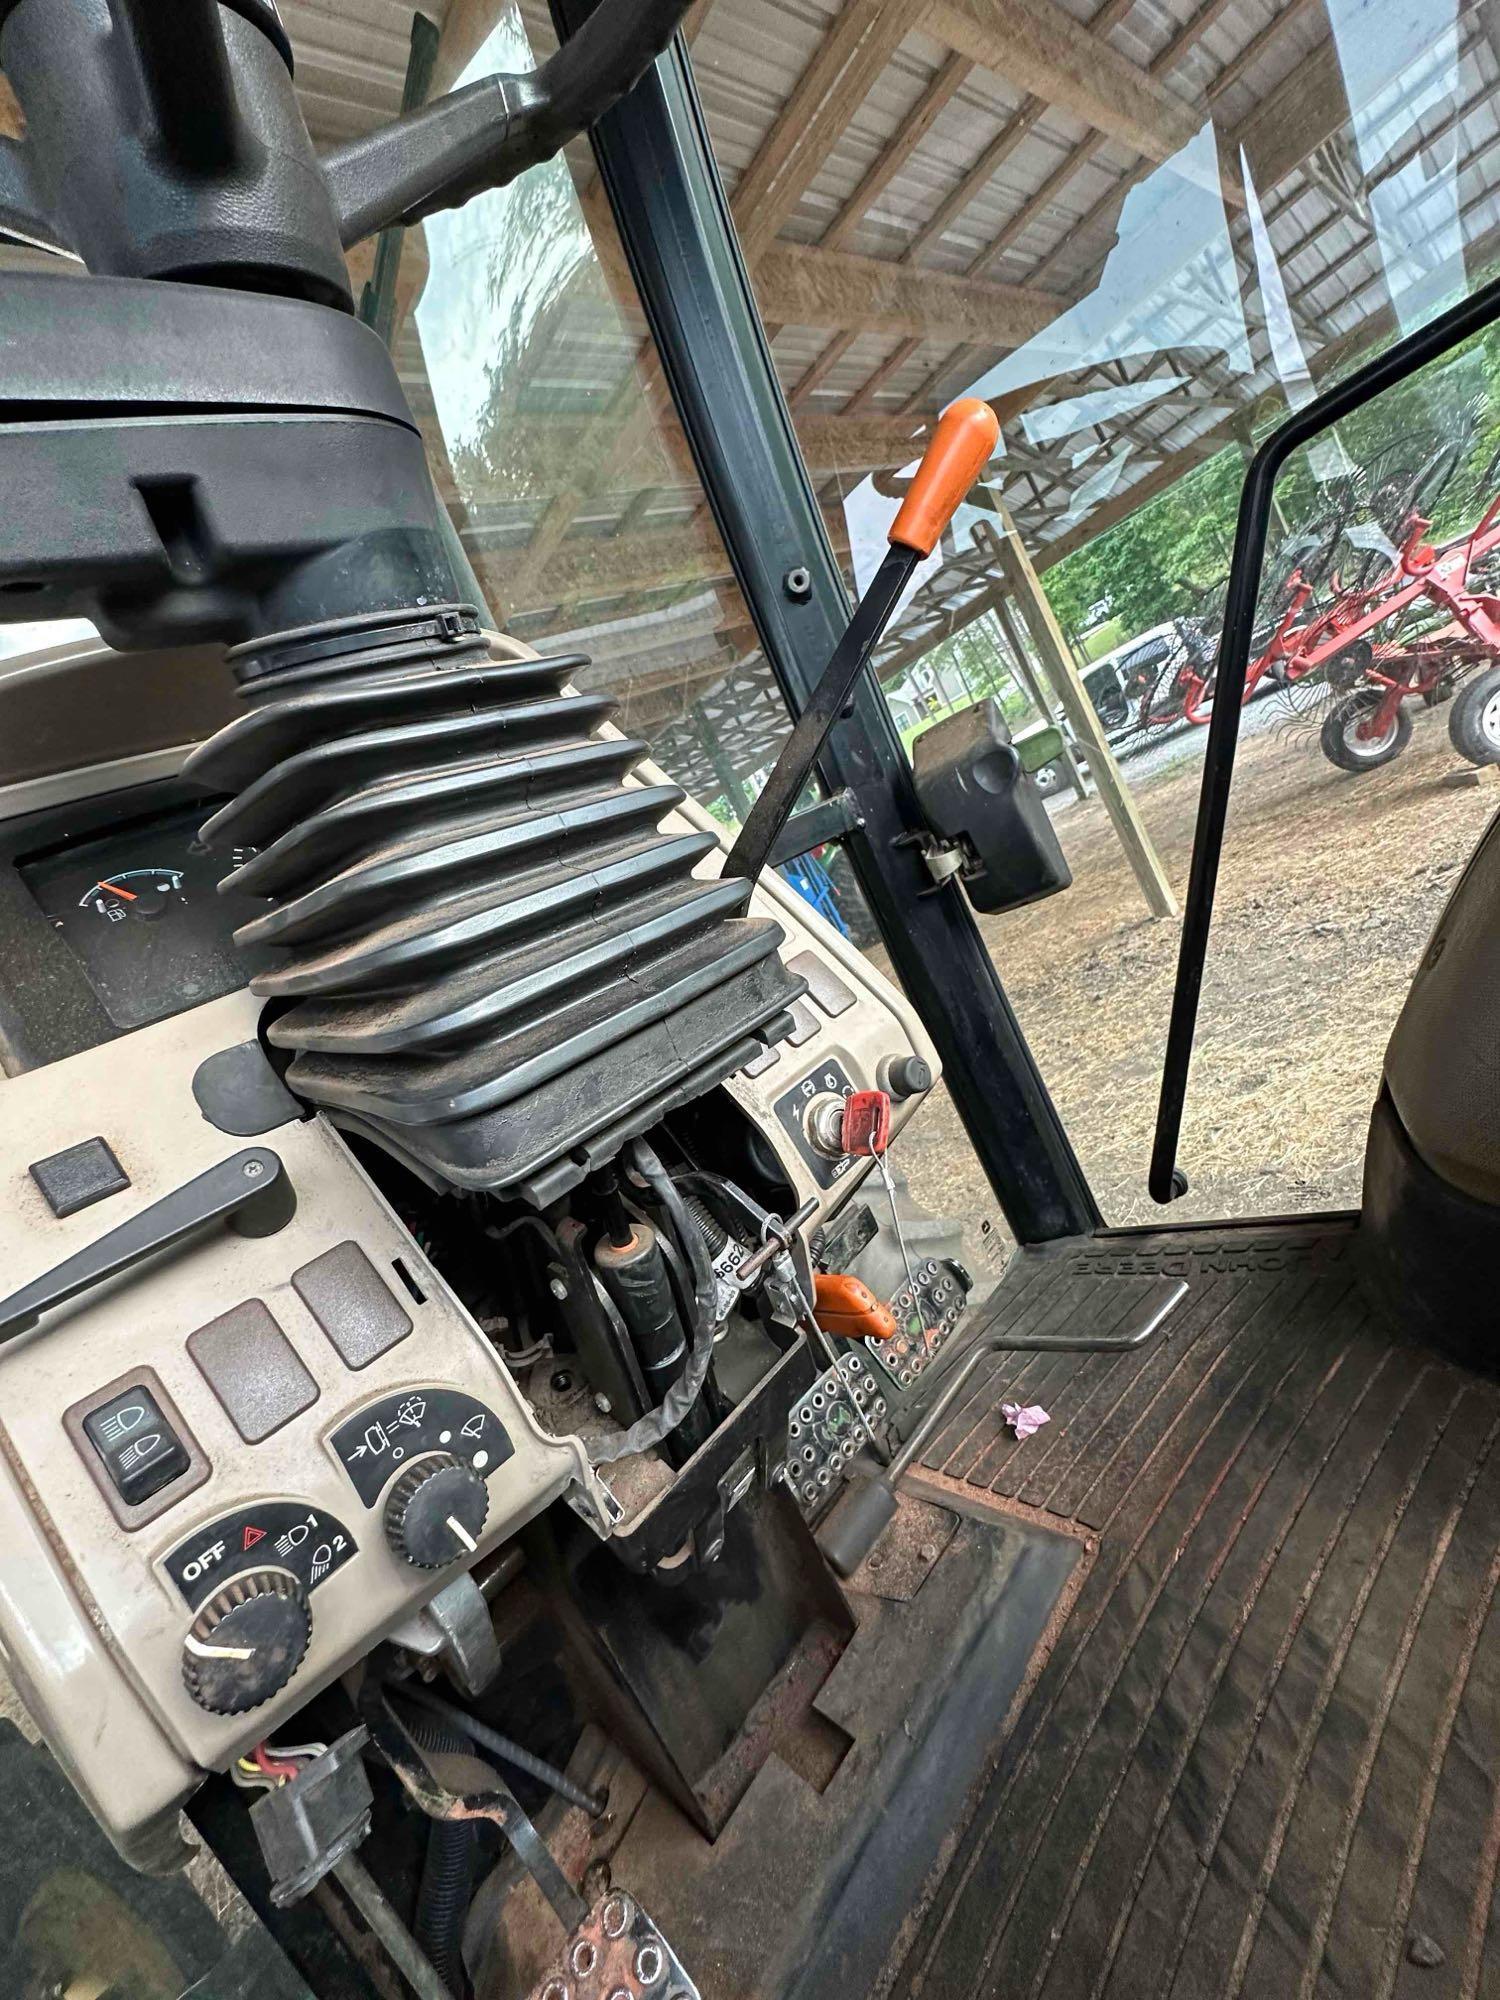 John Deere 6140 D Tractor